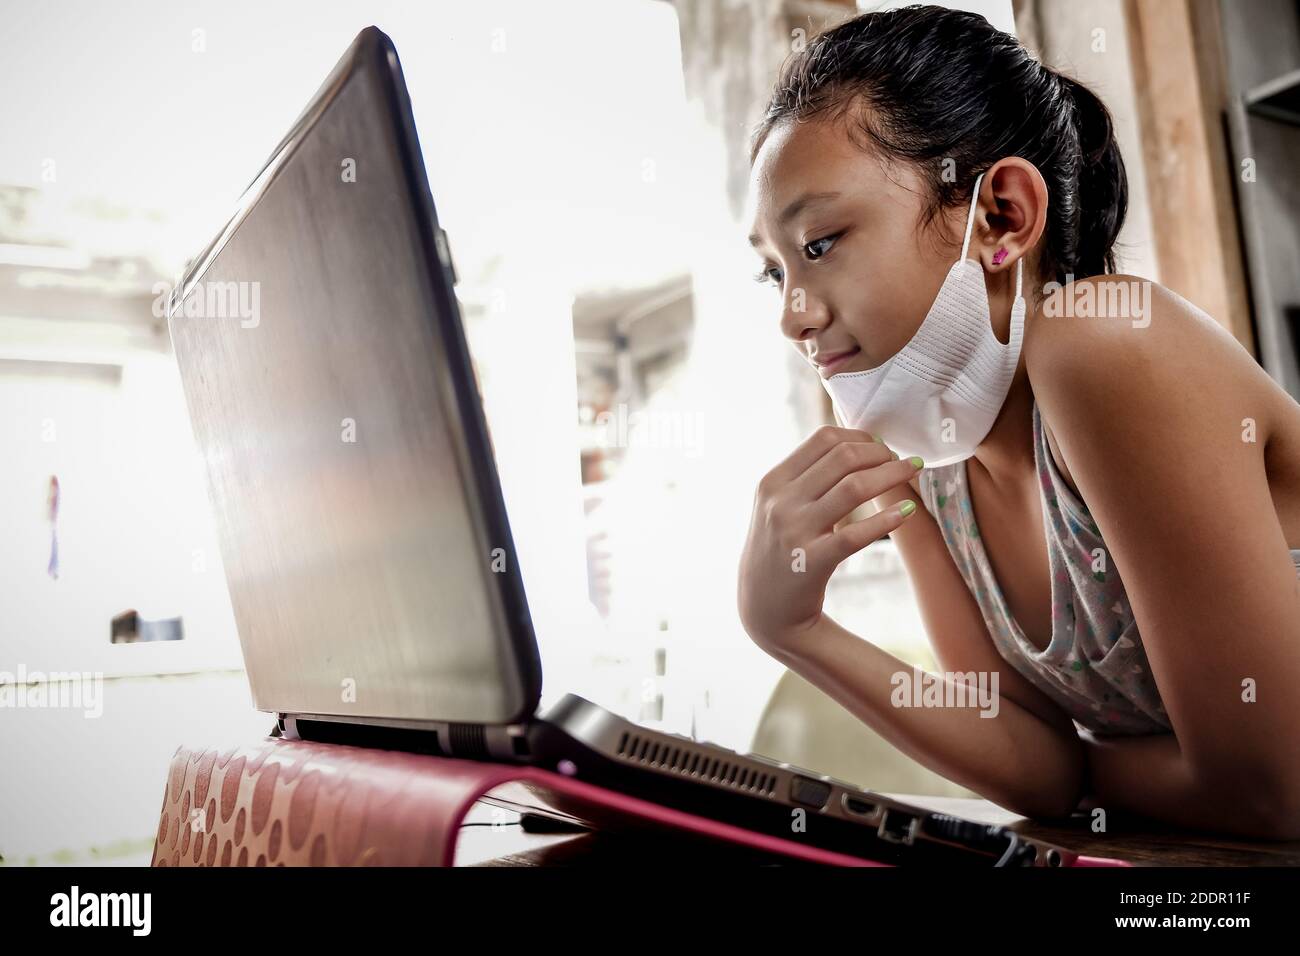 Ragazza teenage del Sud-est asiatico con maschera facciale davanti a un laptop a casa. Incontro online con gli amici durante la pandemia globale Foto Stock